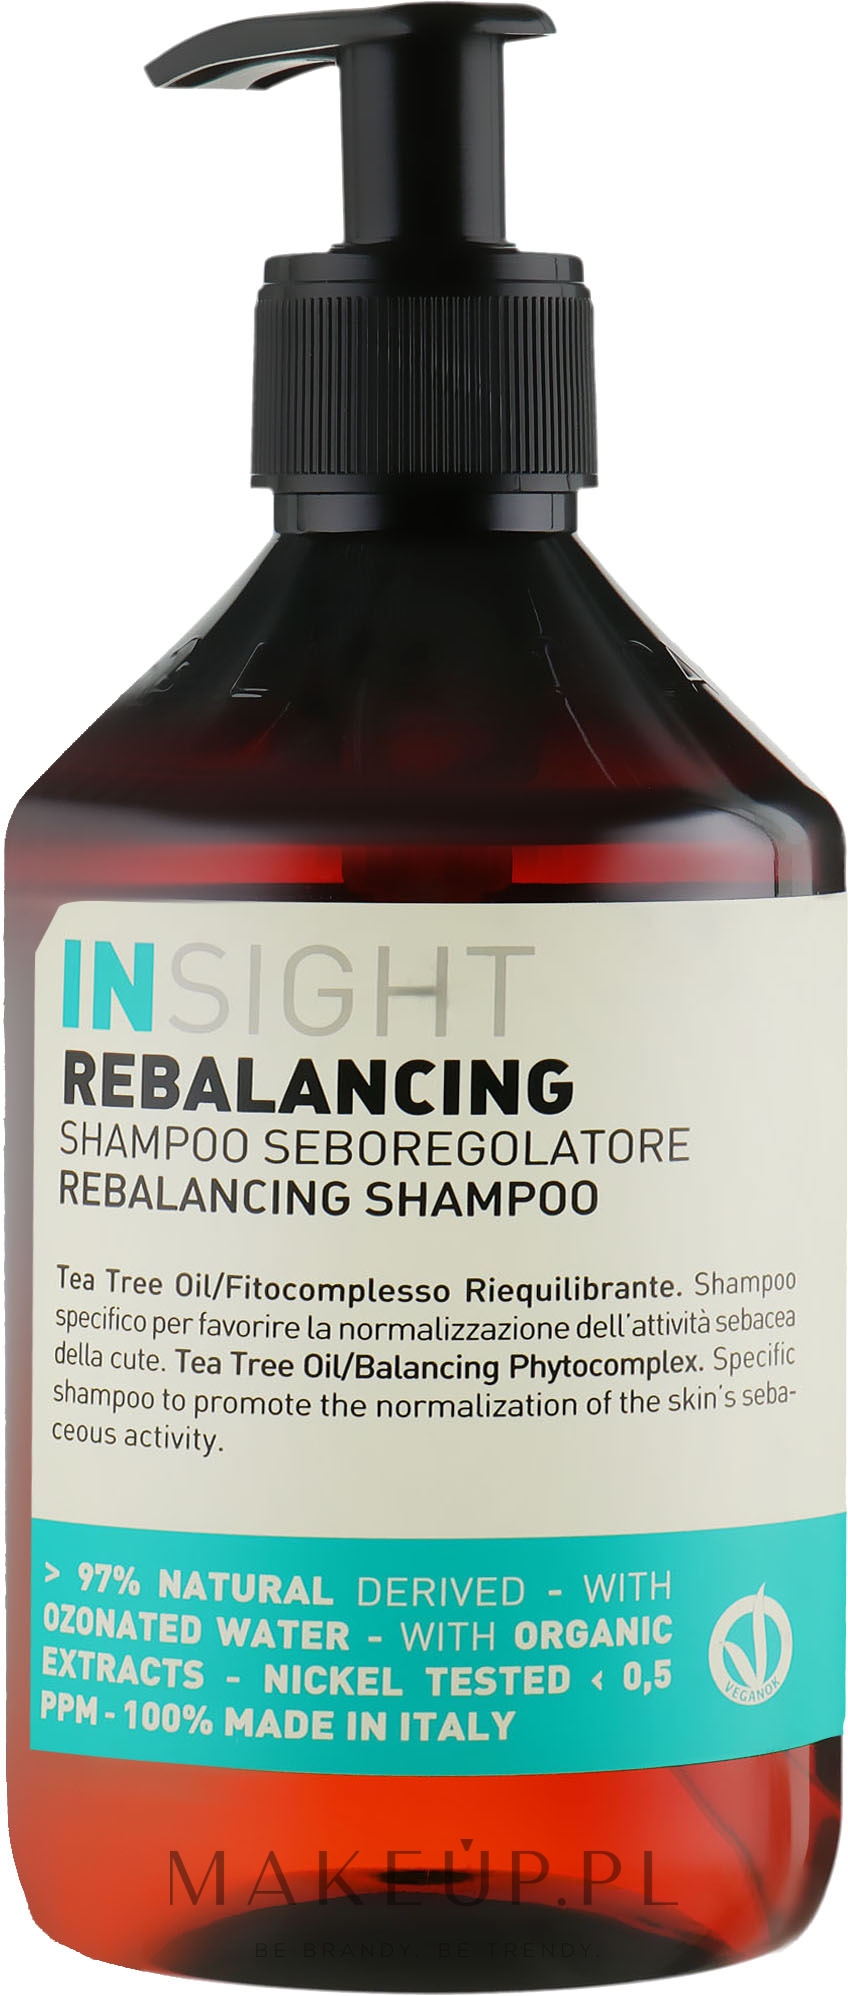 insight rebalancing szampon gdzie kupic warszawa